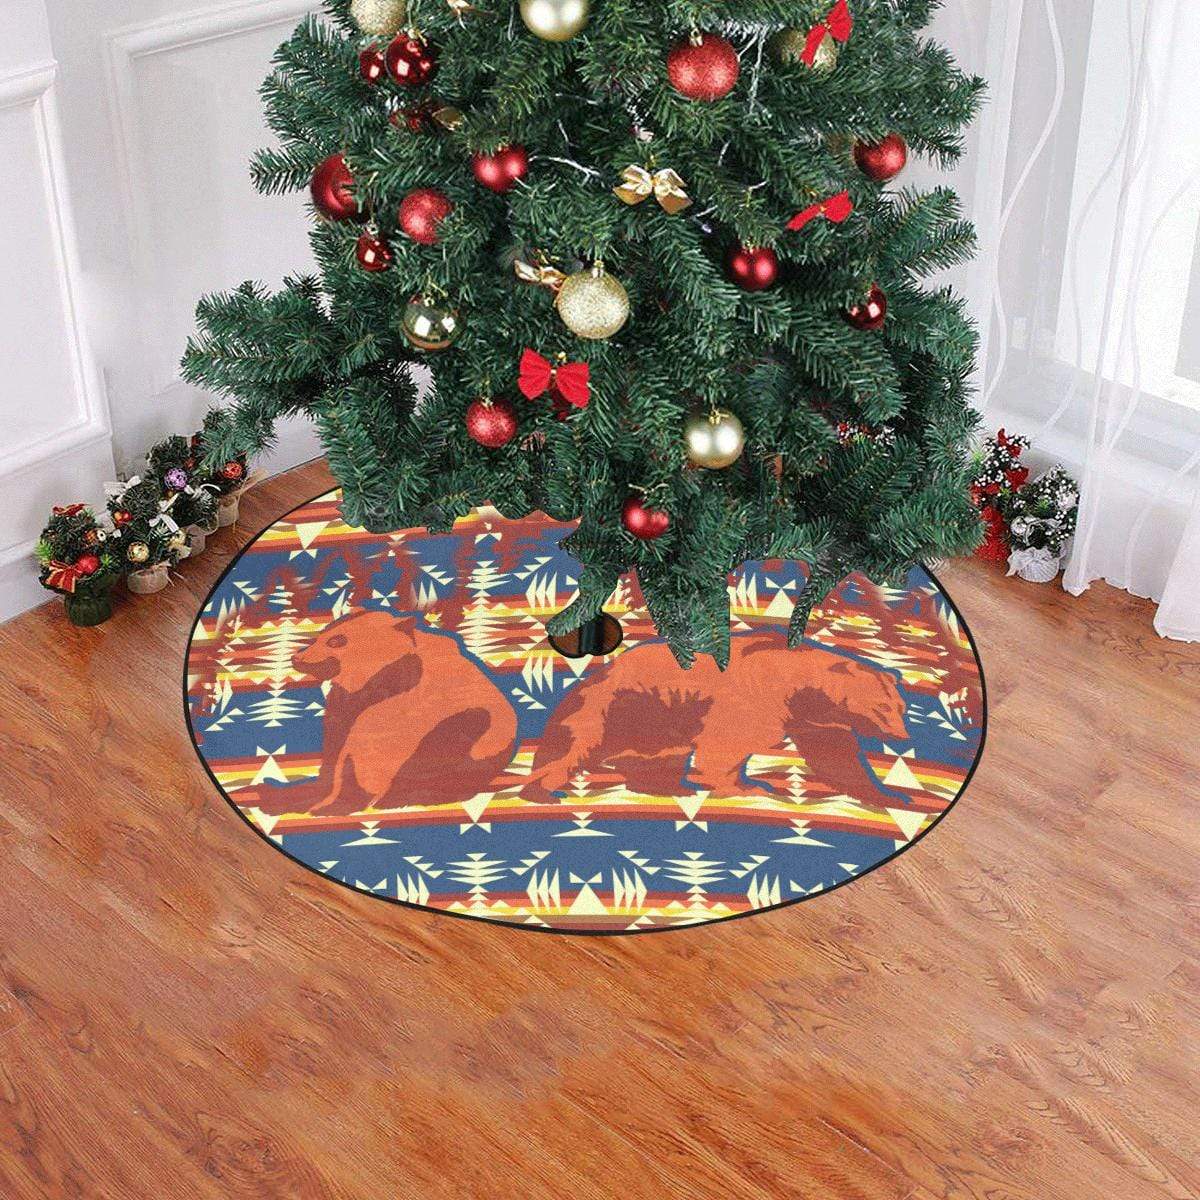 Bear Canyon Christmas Tree Skirt 47" x 47" Christmas Tree Skirt e-joyer 